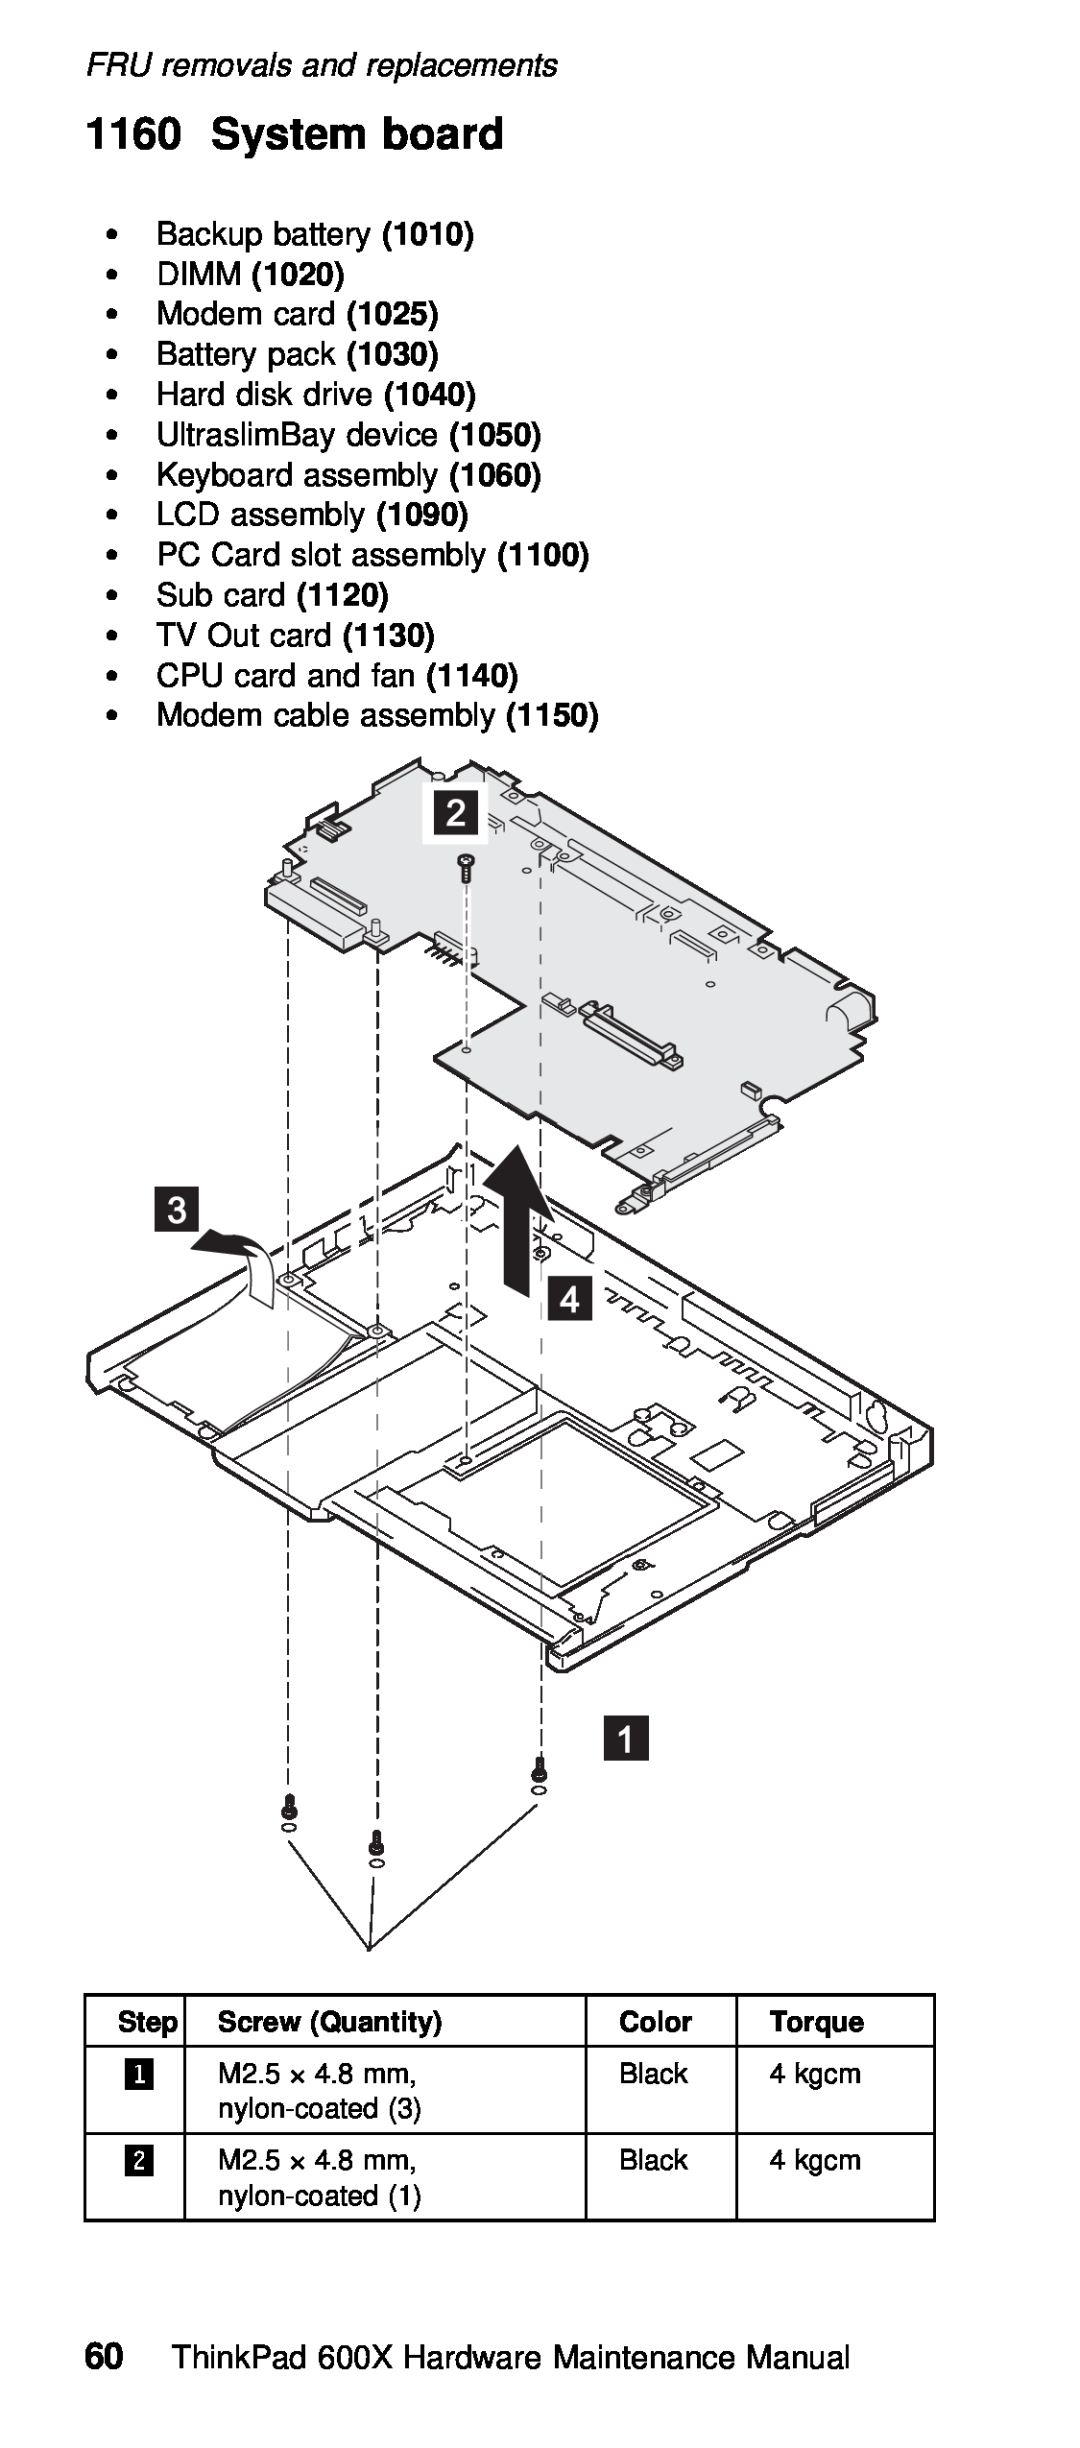 IBM 600X (MT 2646) manual System board, Ÿ Dimm 